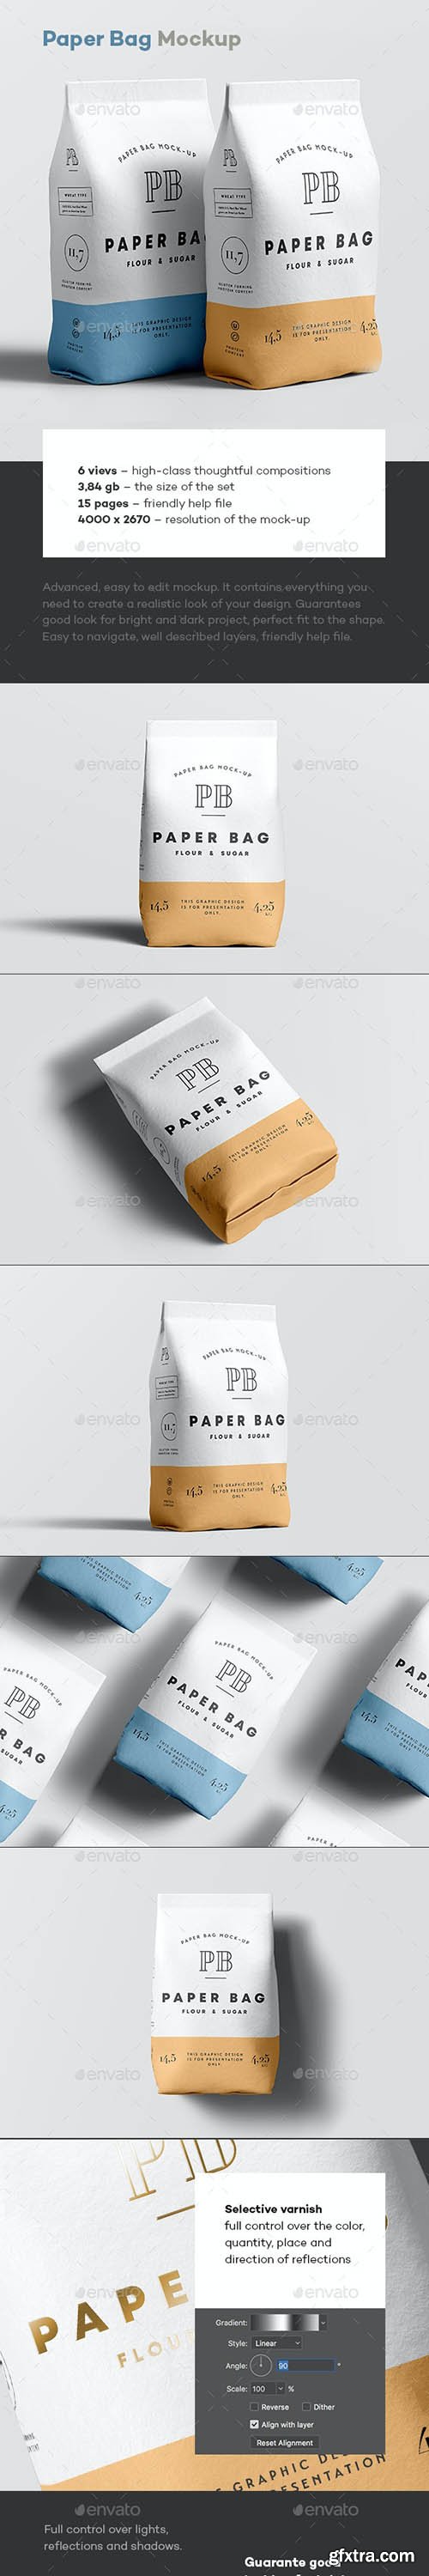 GraphicRiver - Paper Bag Mock-up 35655201